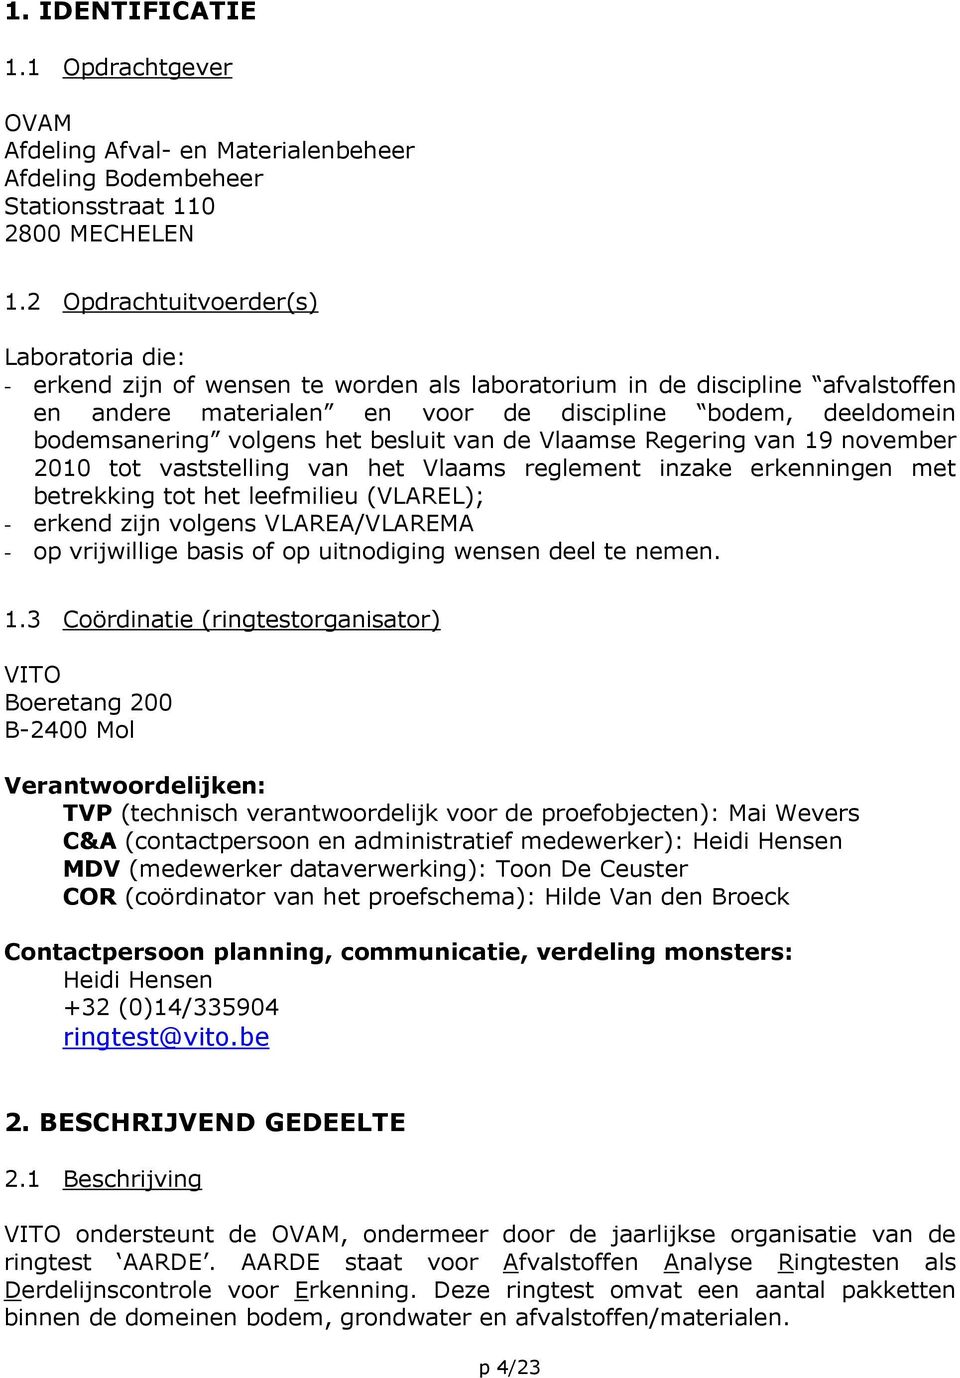 volgens het besluit van de Vlaamse Regering van 19 november 2010 tot vaststelling van het Vlaams reglement inzake erkenningen met betrekking tot het leefmilieu (VLAREL); - erkend zijn volgens